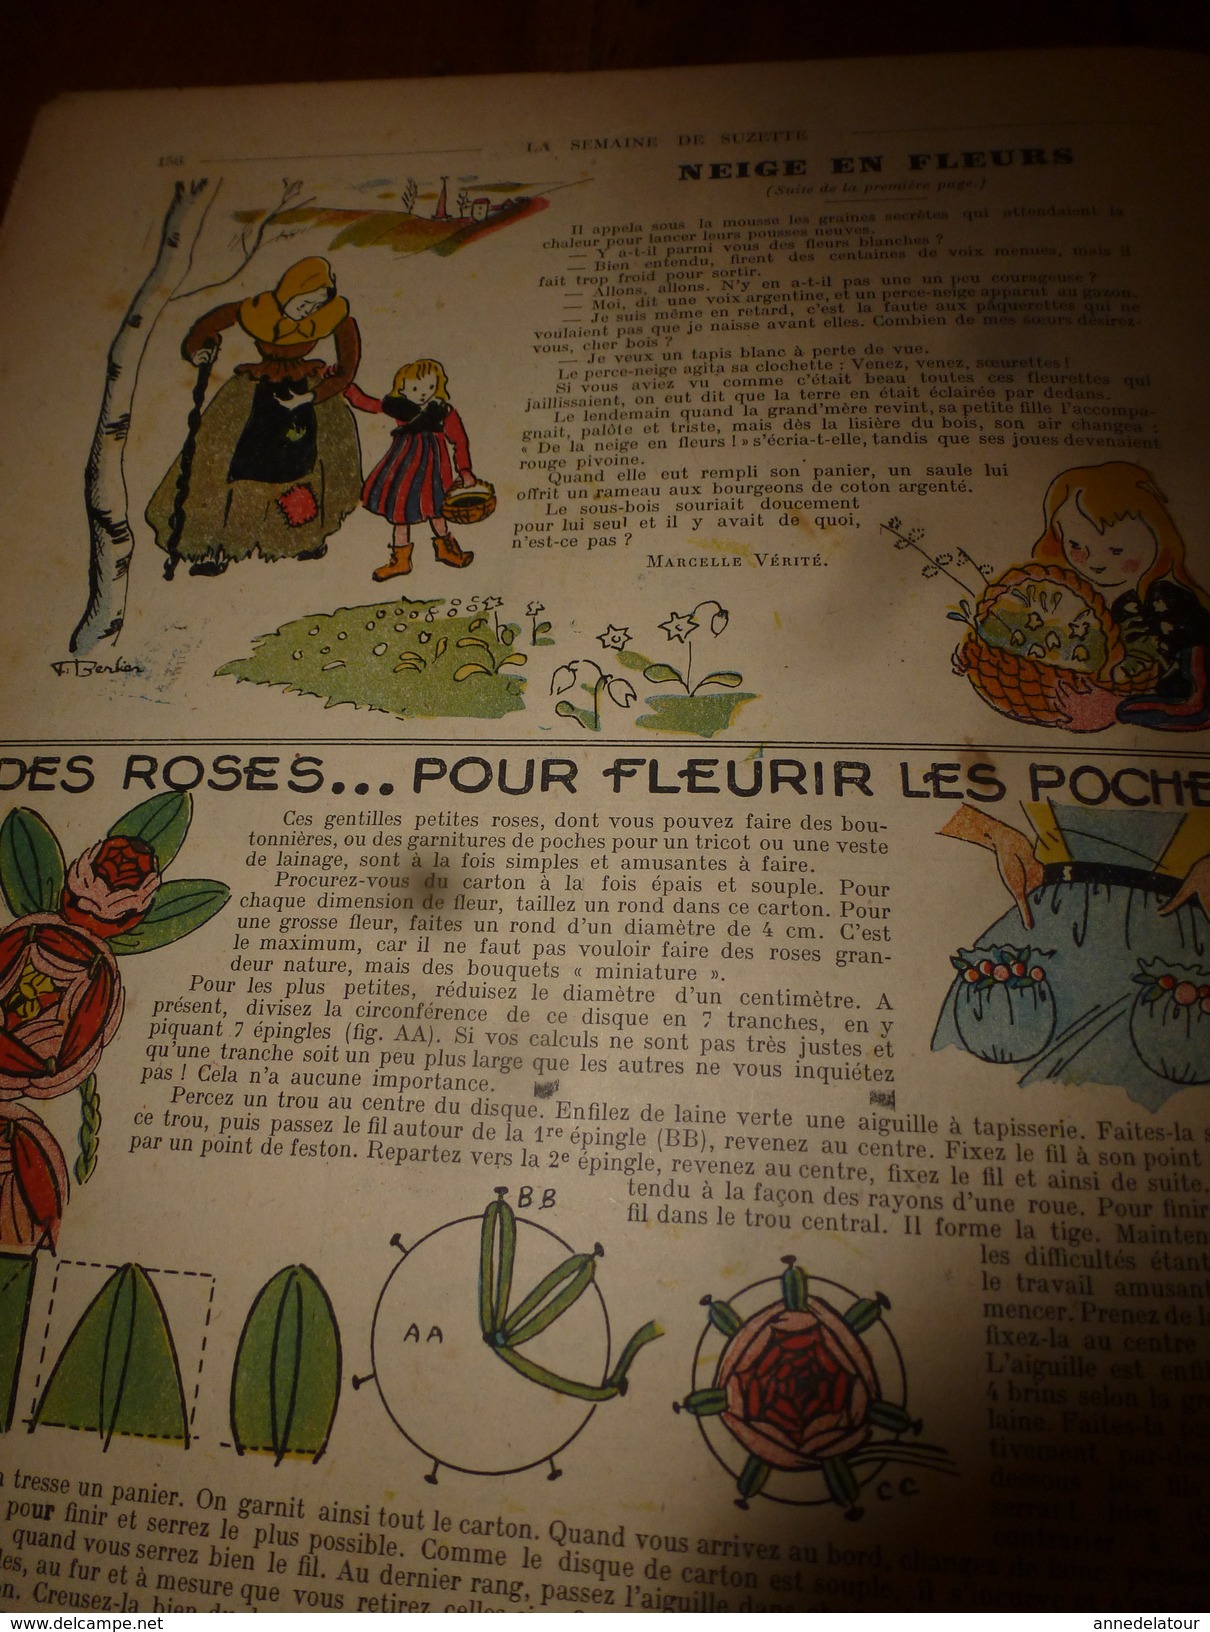 1947 LSDS : Toute L'histoire Du SCOUTISME  B.-P. (Bi-Pi En Anglais) De Baden Powel ; Etc - La Semaine De Suzette